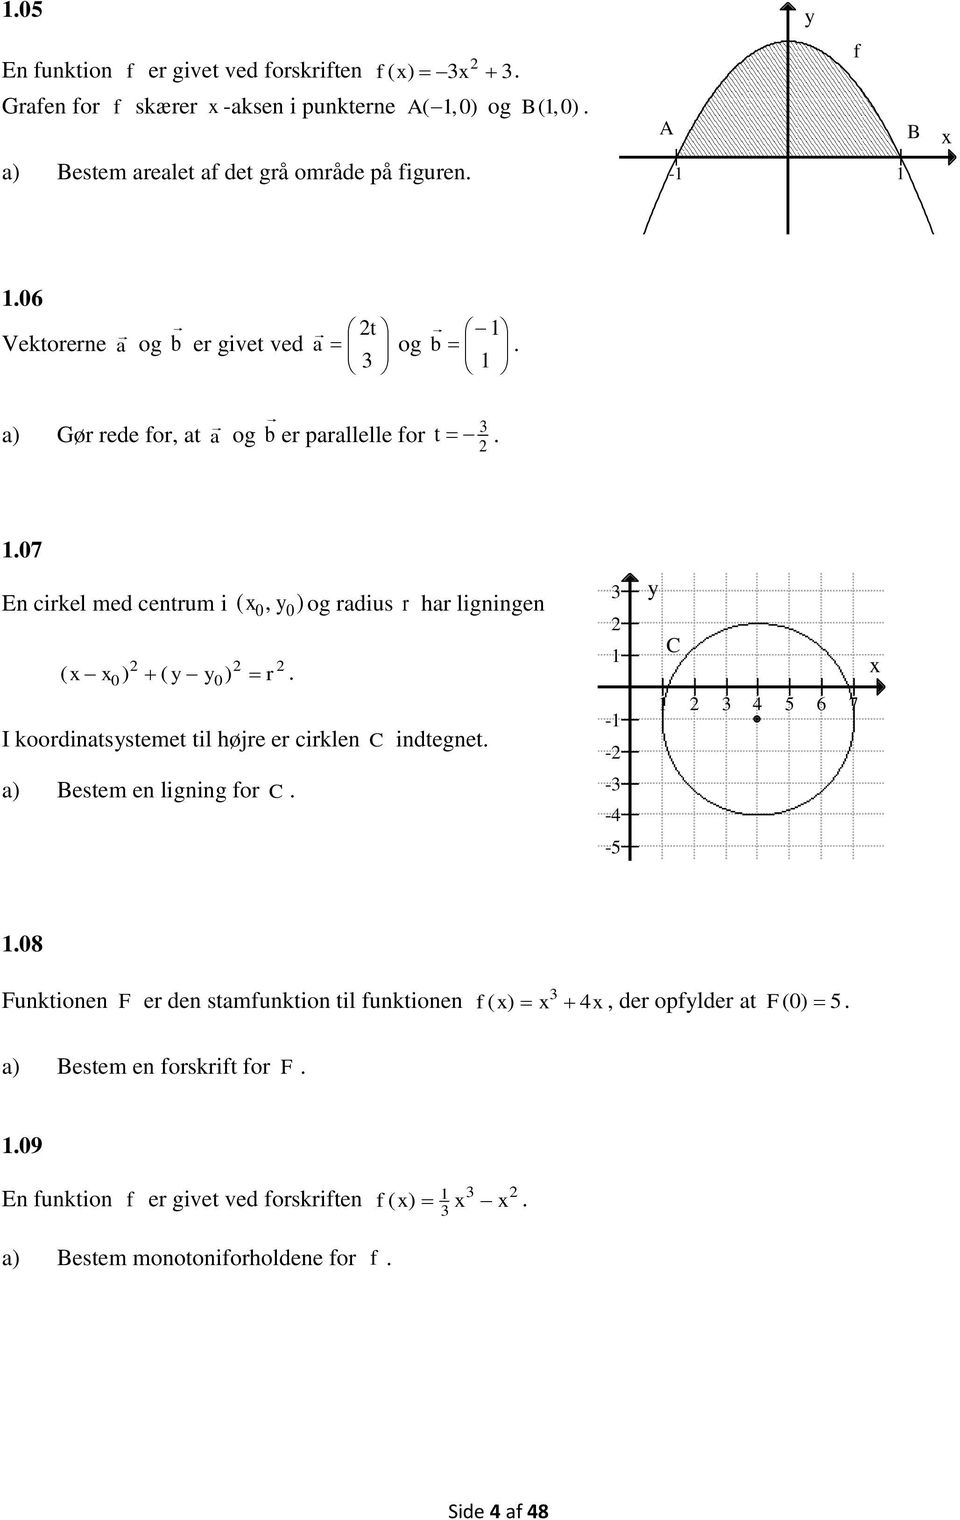 ( r I koordinatsystemet til højre er cirklen C indtegnet. 3 1-1 - y C 1 3 4 5 6 7 a) Bestem en ligning for C. -3-4 -5 1.